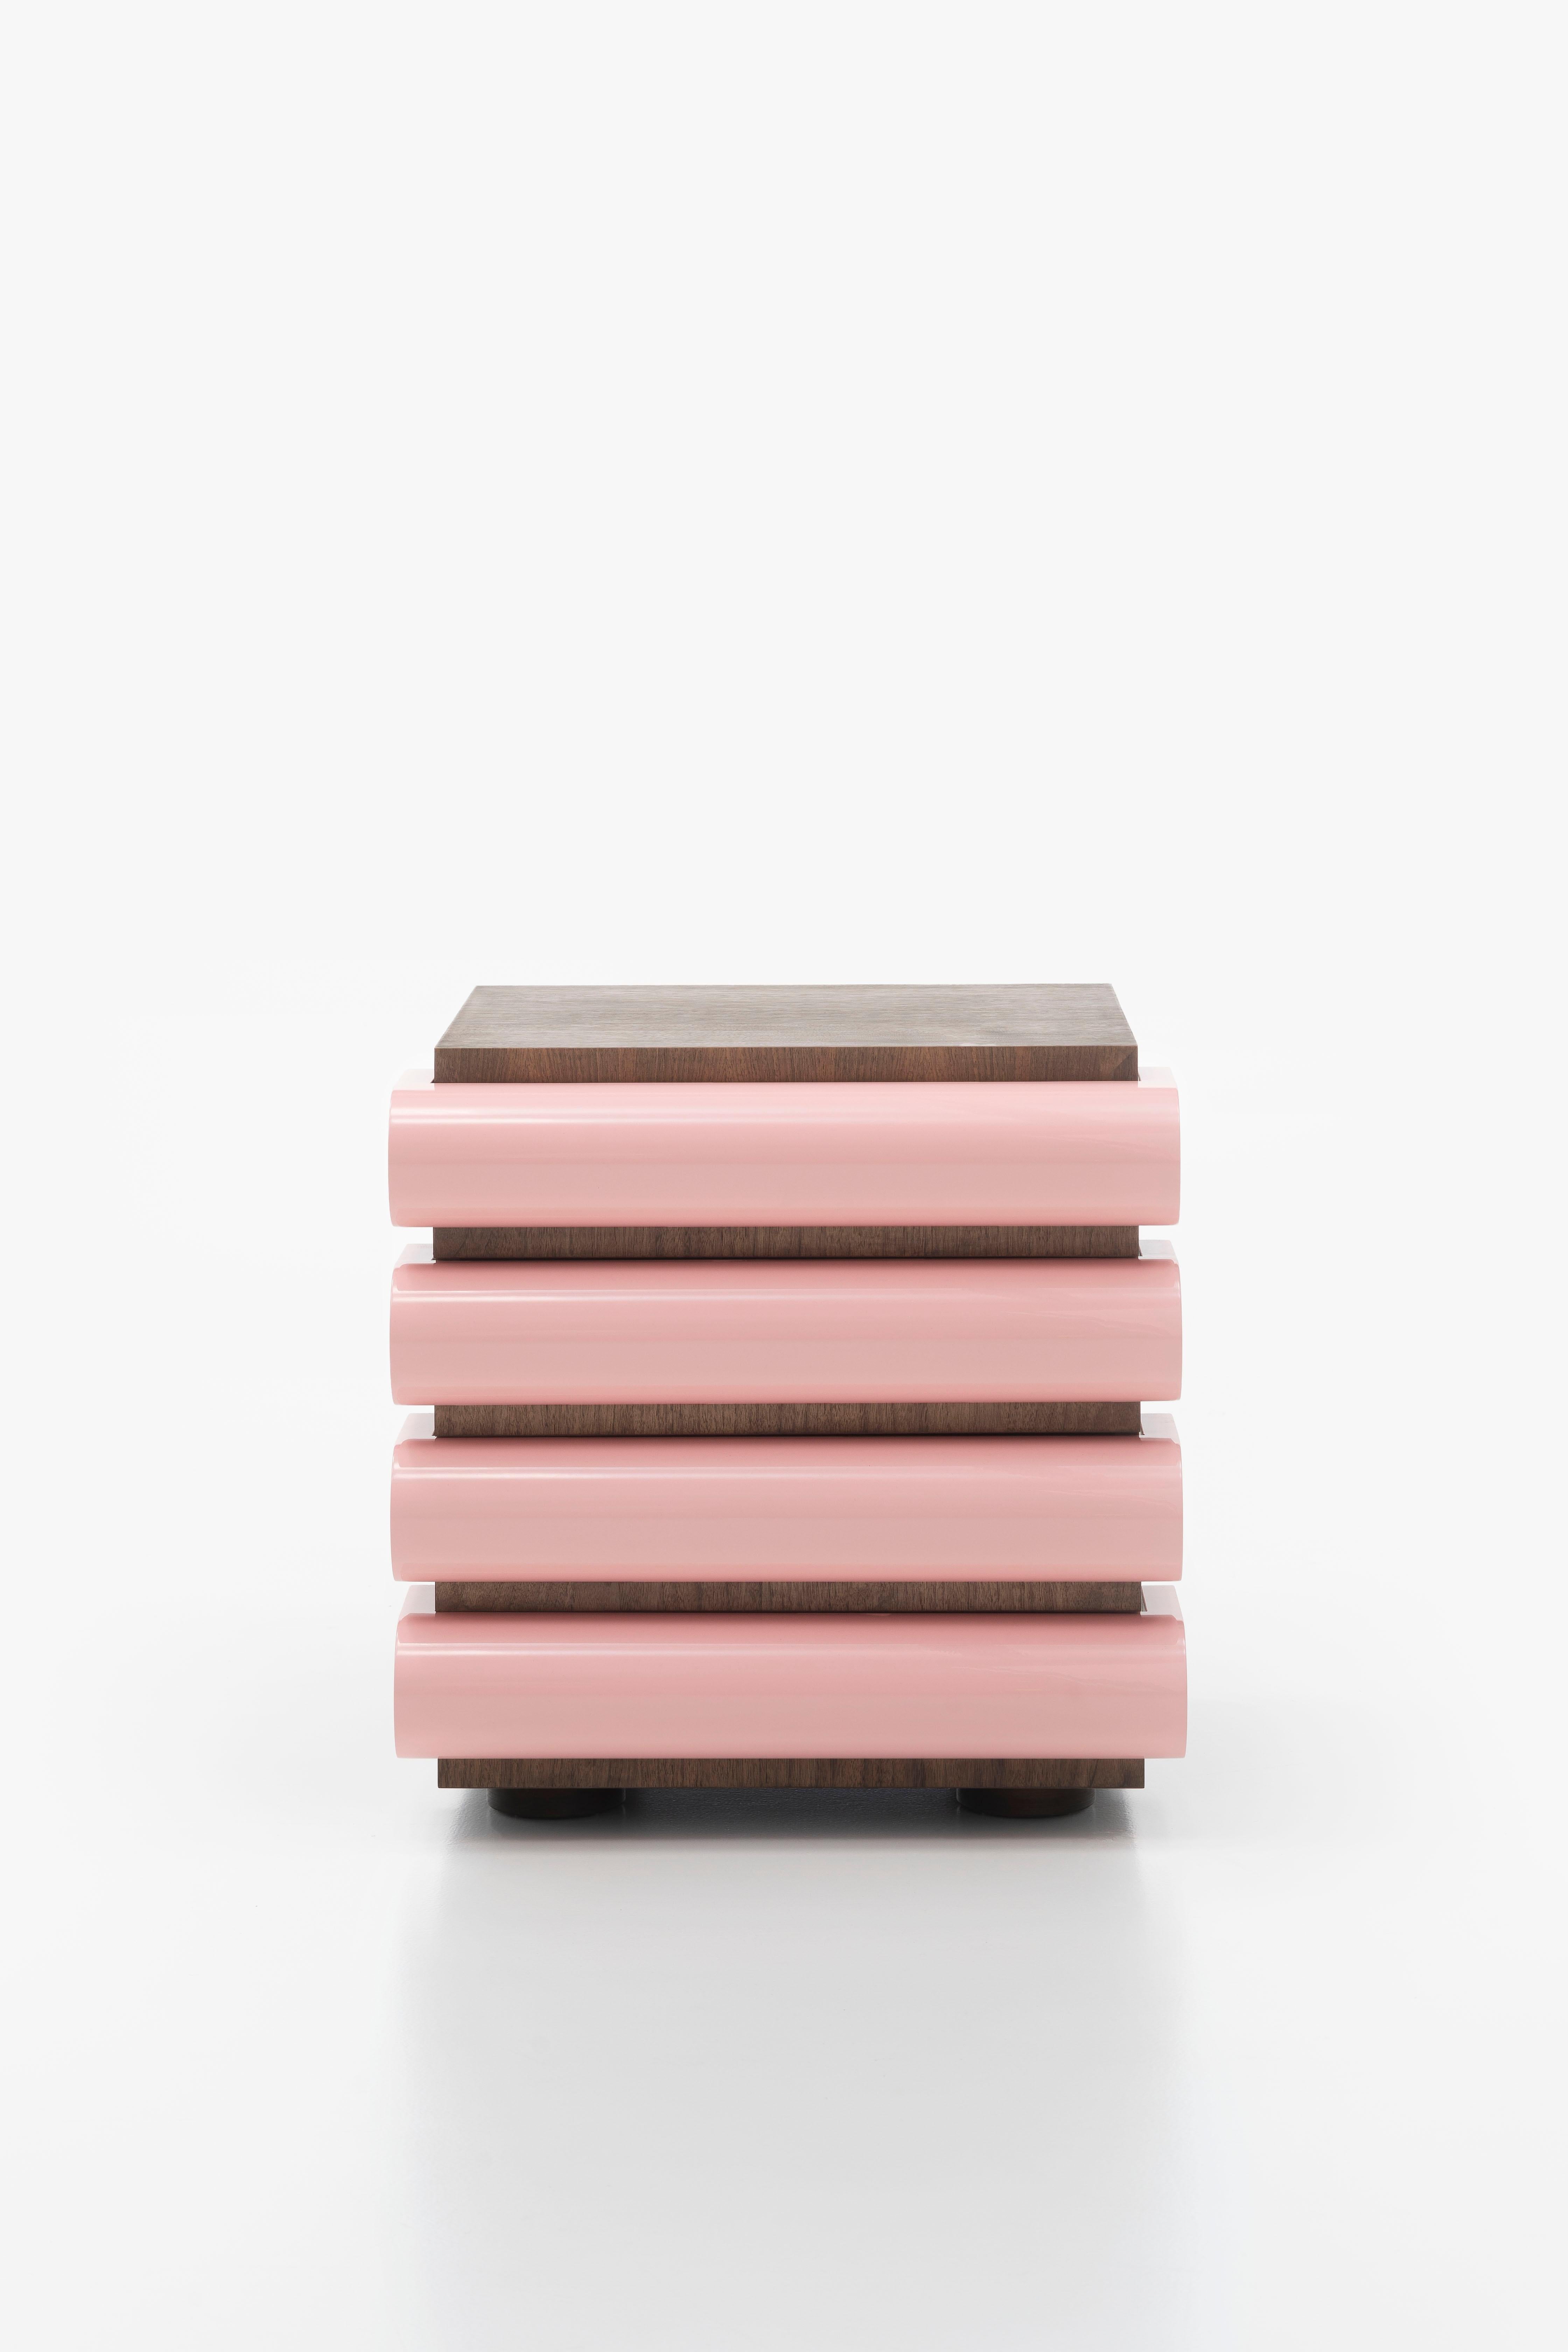 Acerbis Storet-Schrank mit Schubladenschrank aus dunkel gebeiztem Nussbaumholz und rosa glänzendem Lack 